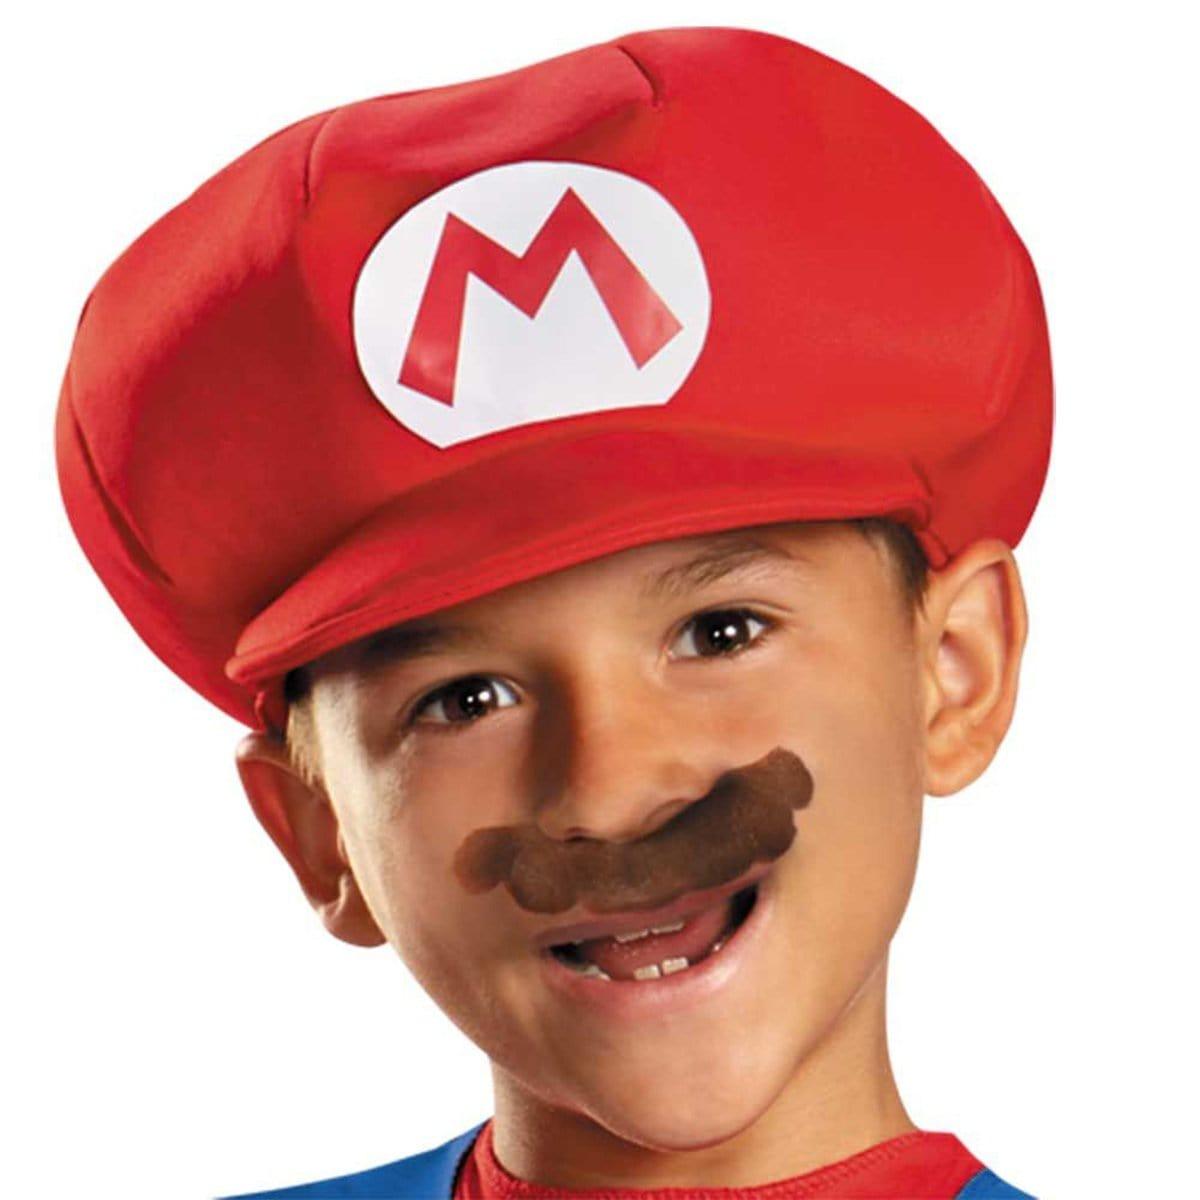 Classic Mario Costume for Kids, Super Mario Bros.